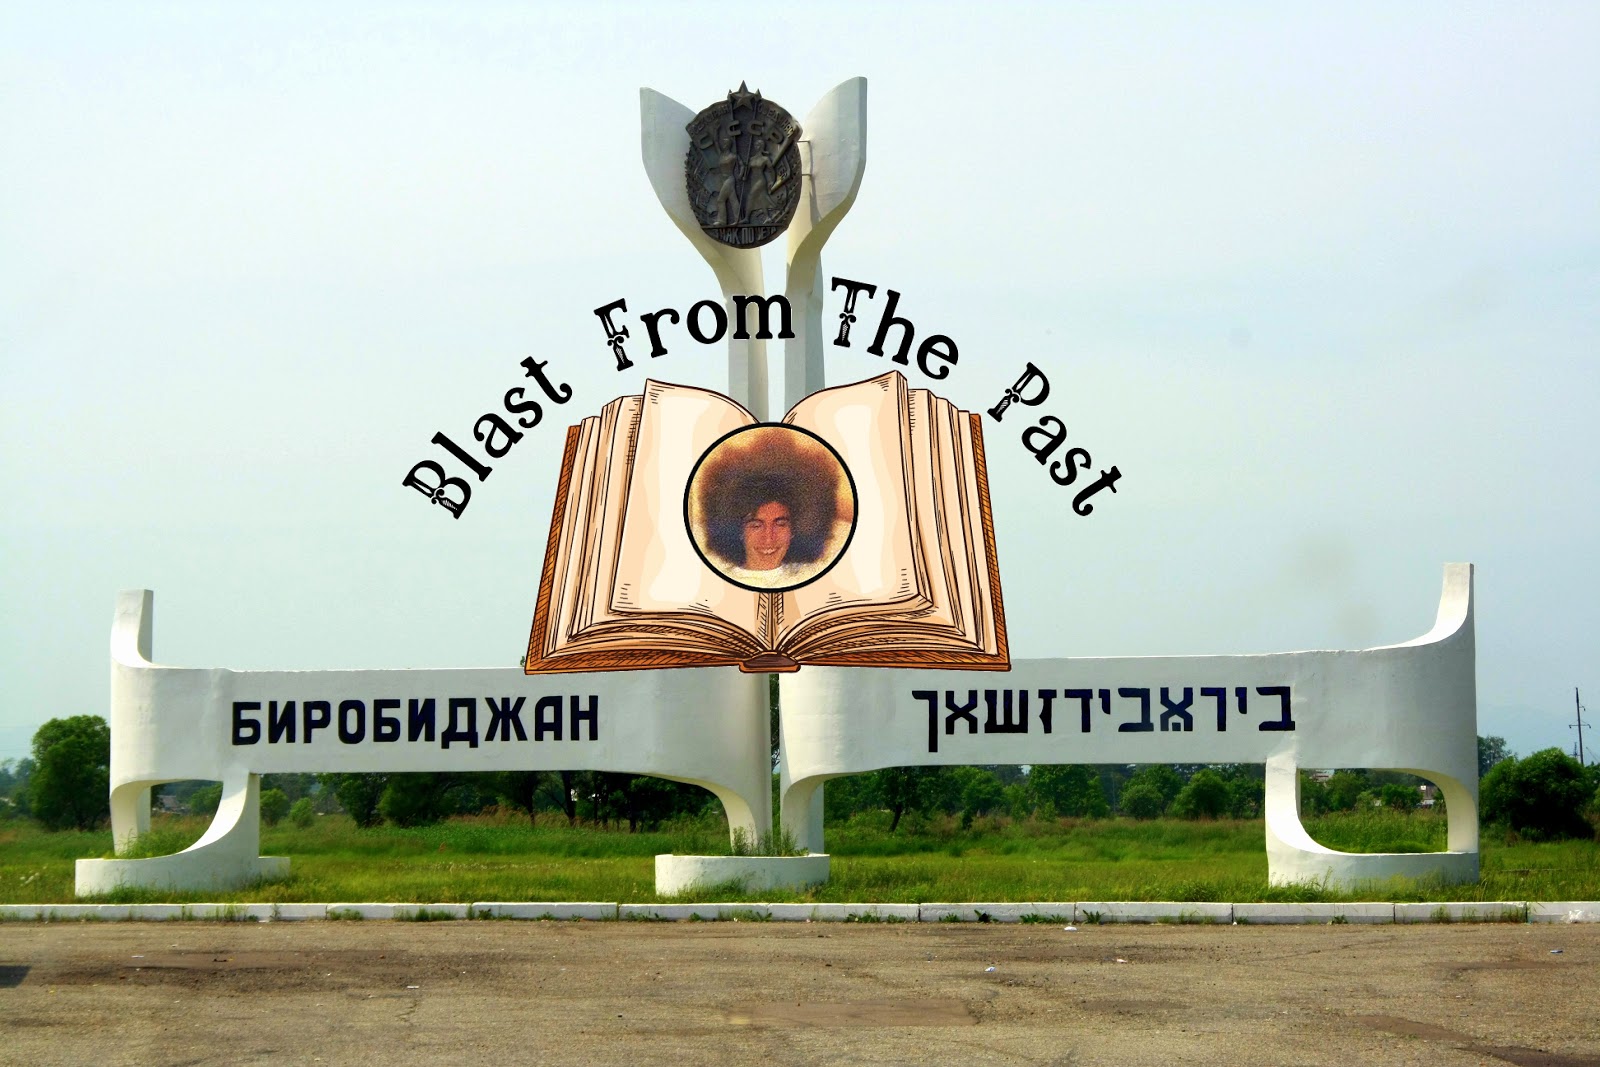 Birobidzhan: Jewish Utopia?